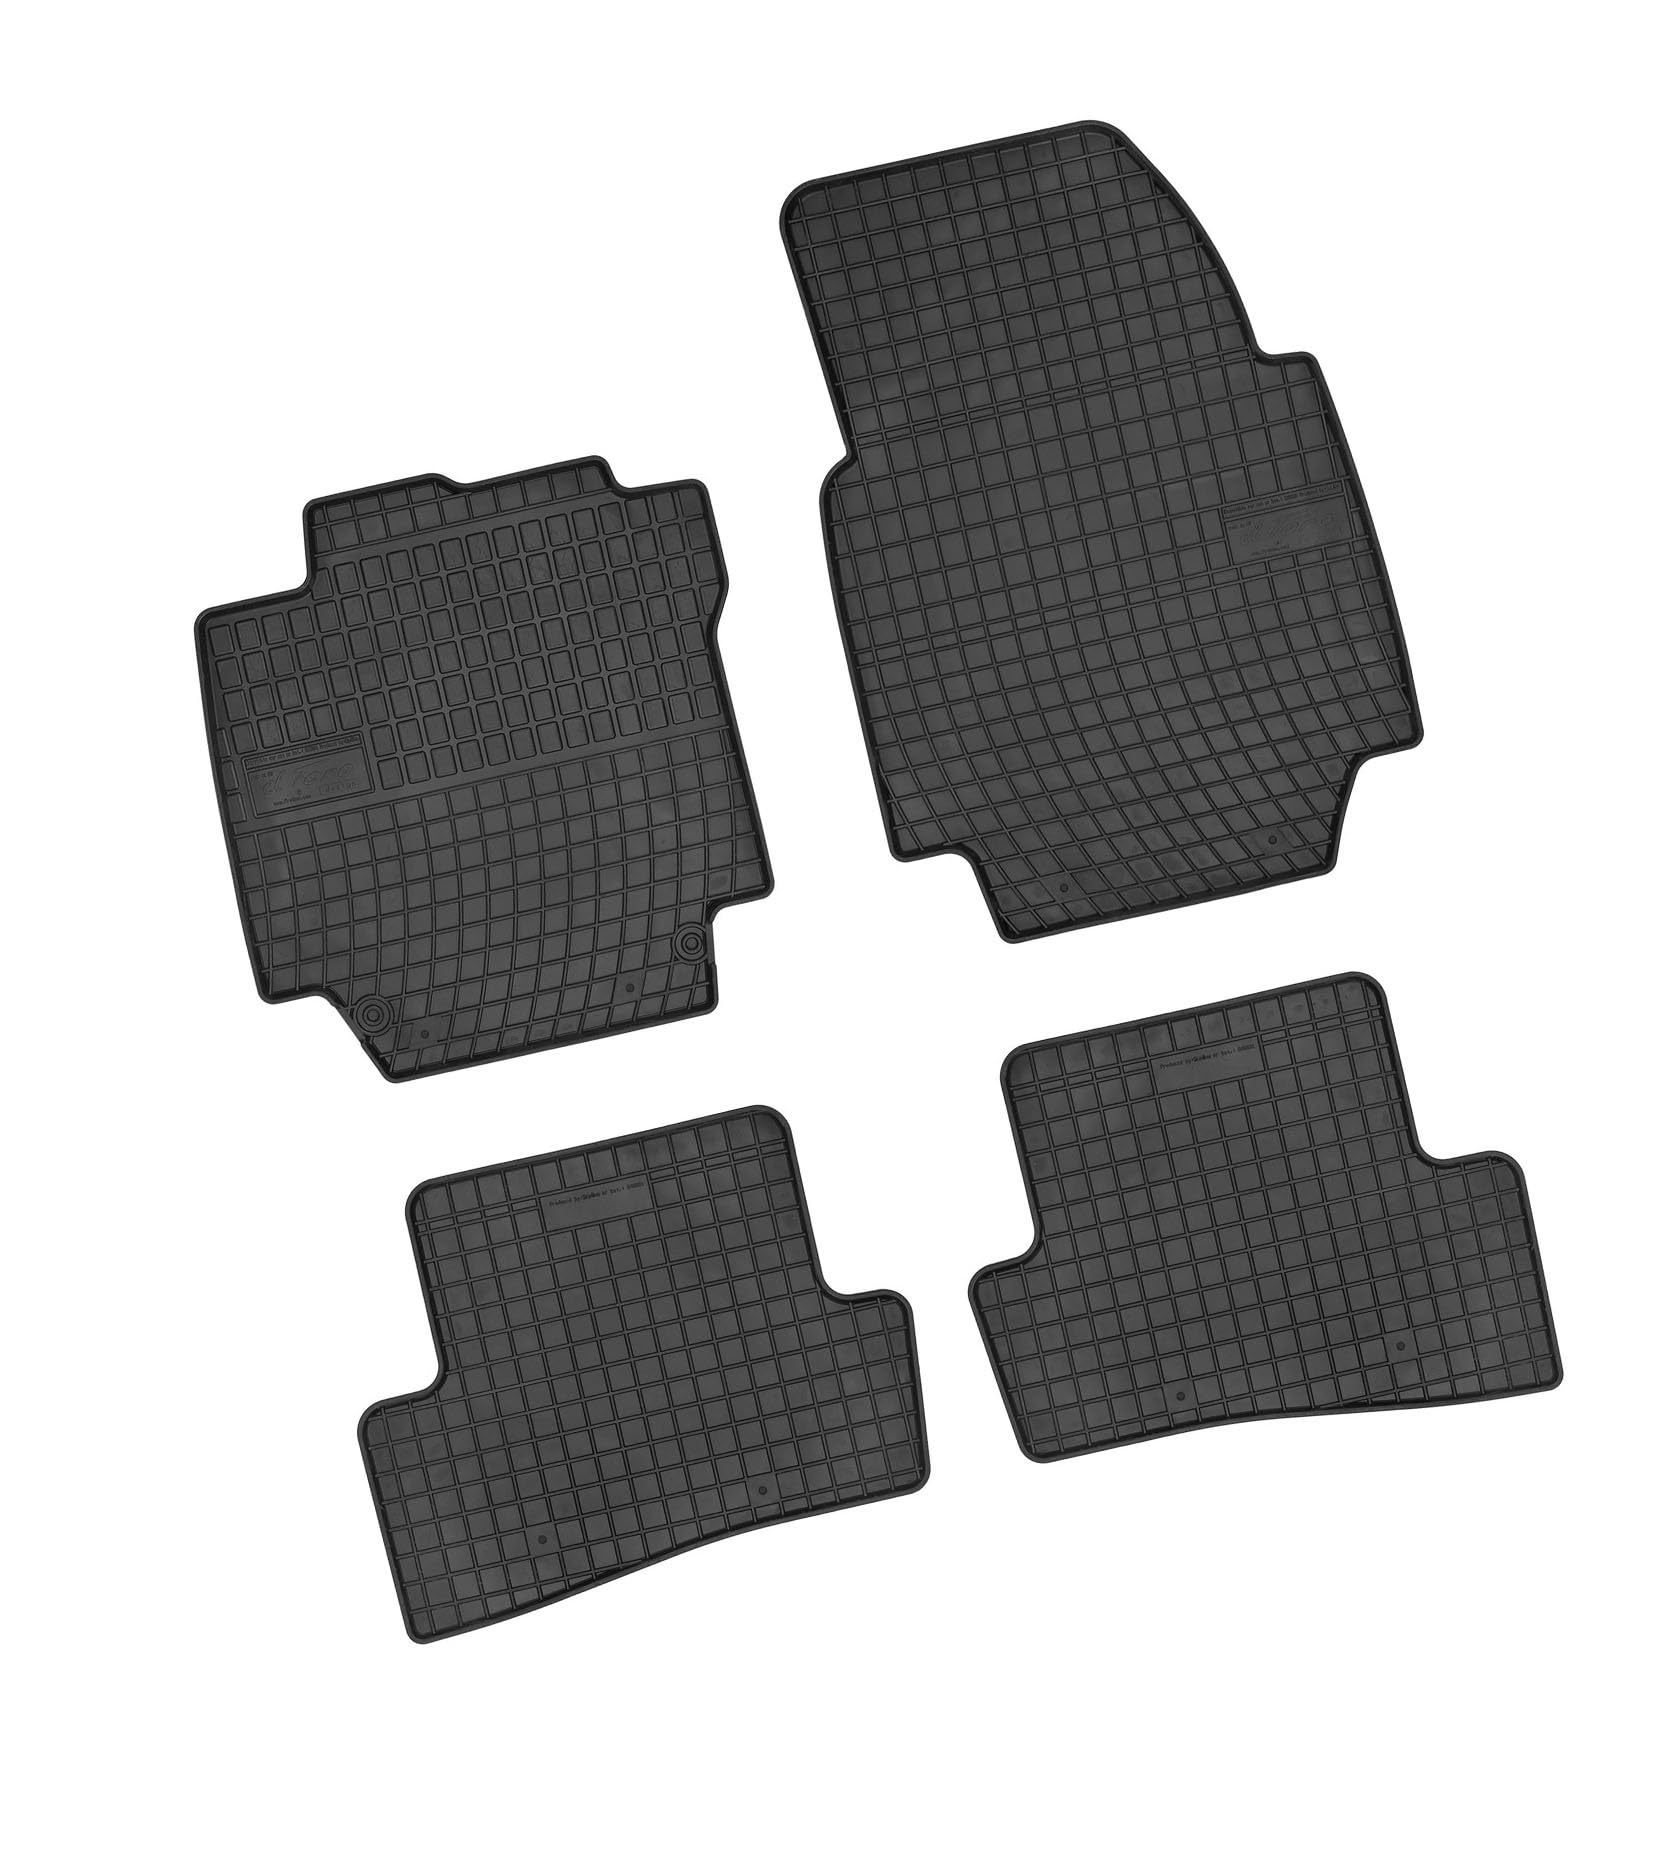 Bär-AfC RE08102n Gummimatten Auto Fußmatten Schwarz, Erhöhter Rand, Set 4-teilig, Passgenau für Modell Siehe Details von Bär-AfC